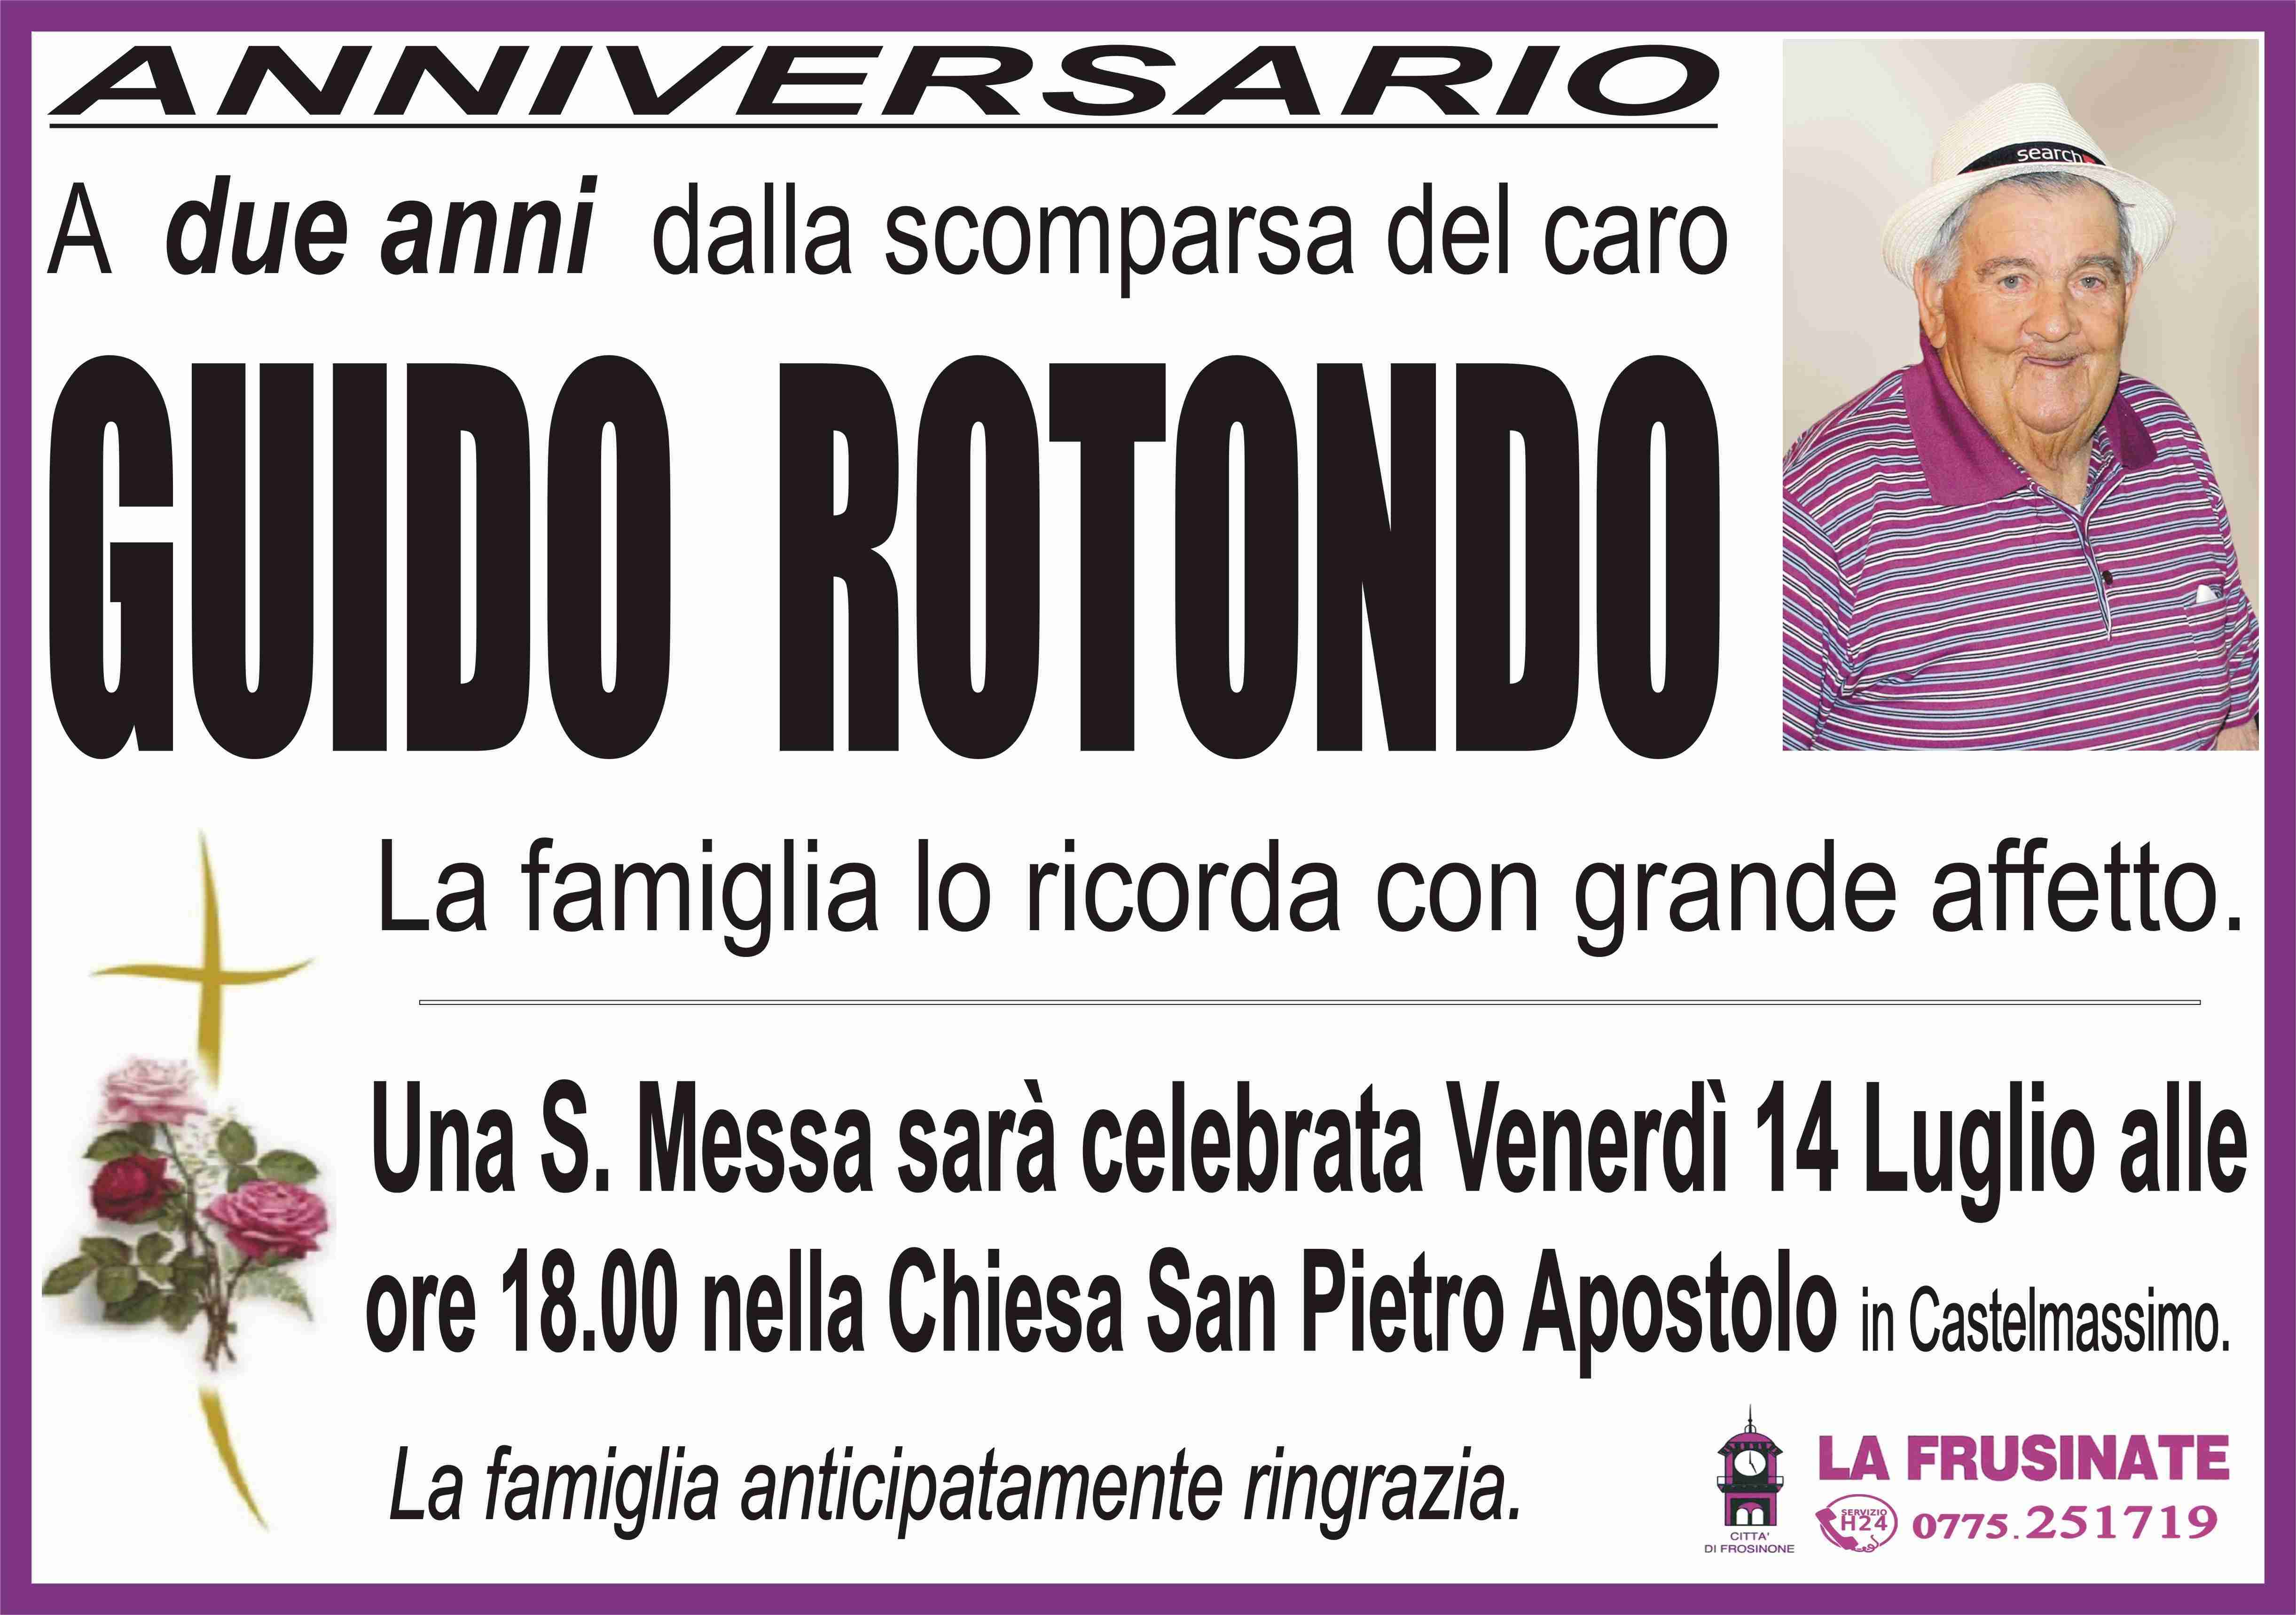 Guido Rotondo